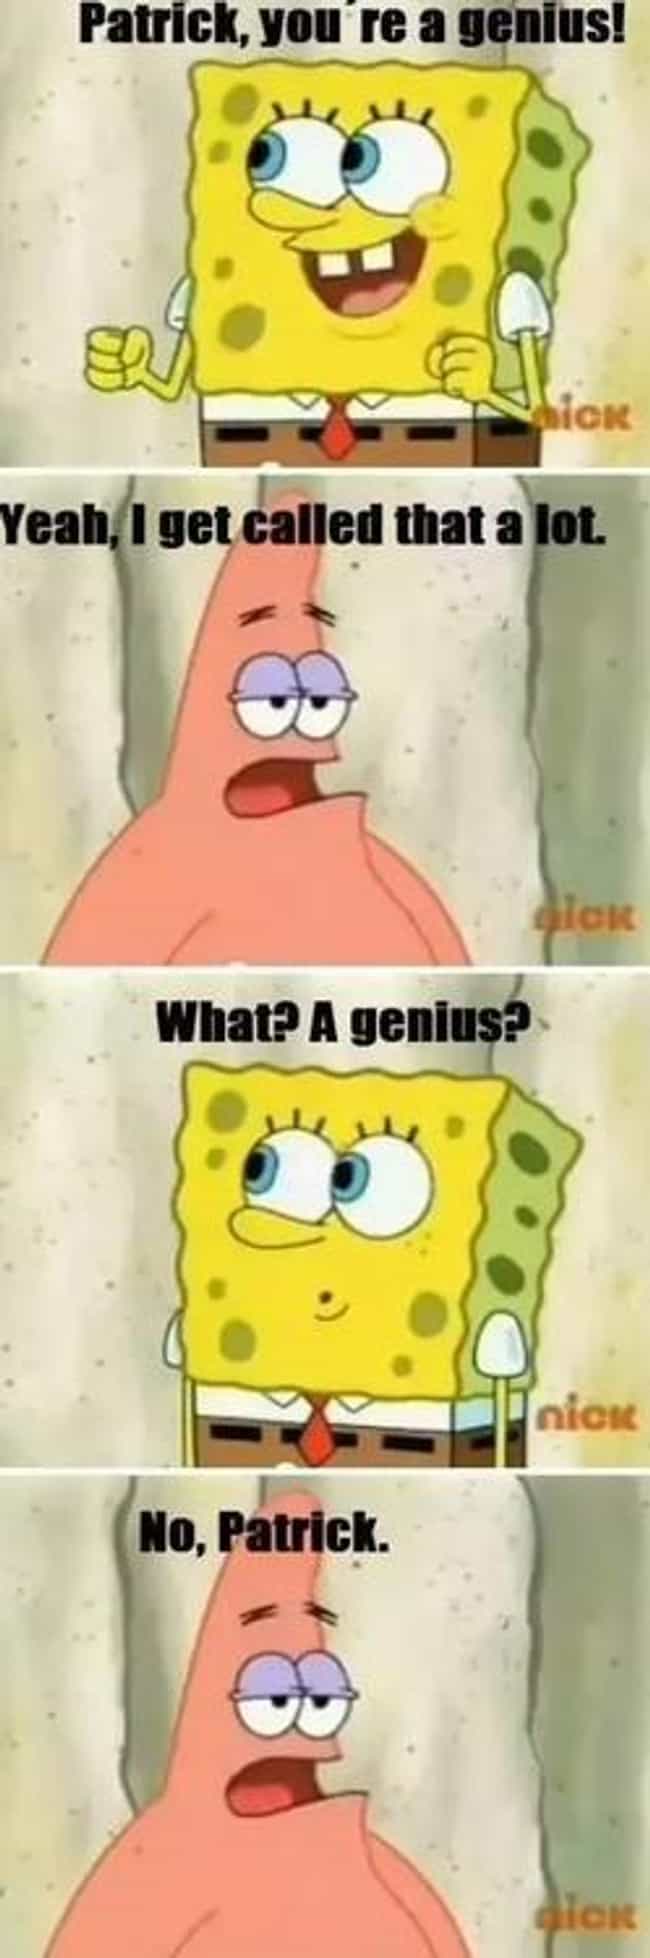 The Funniest Spongebob Squarepants Pictures ViraLuck